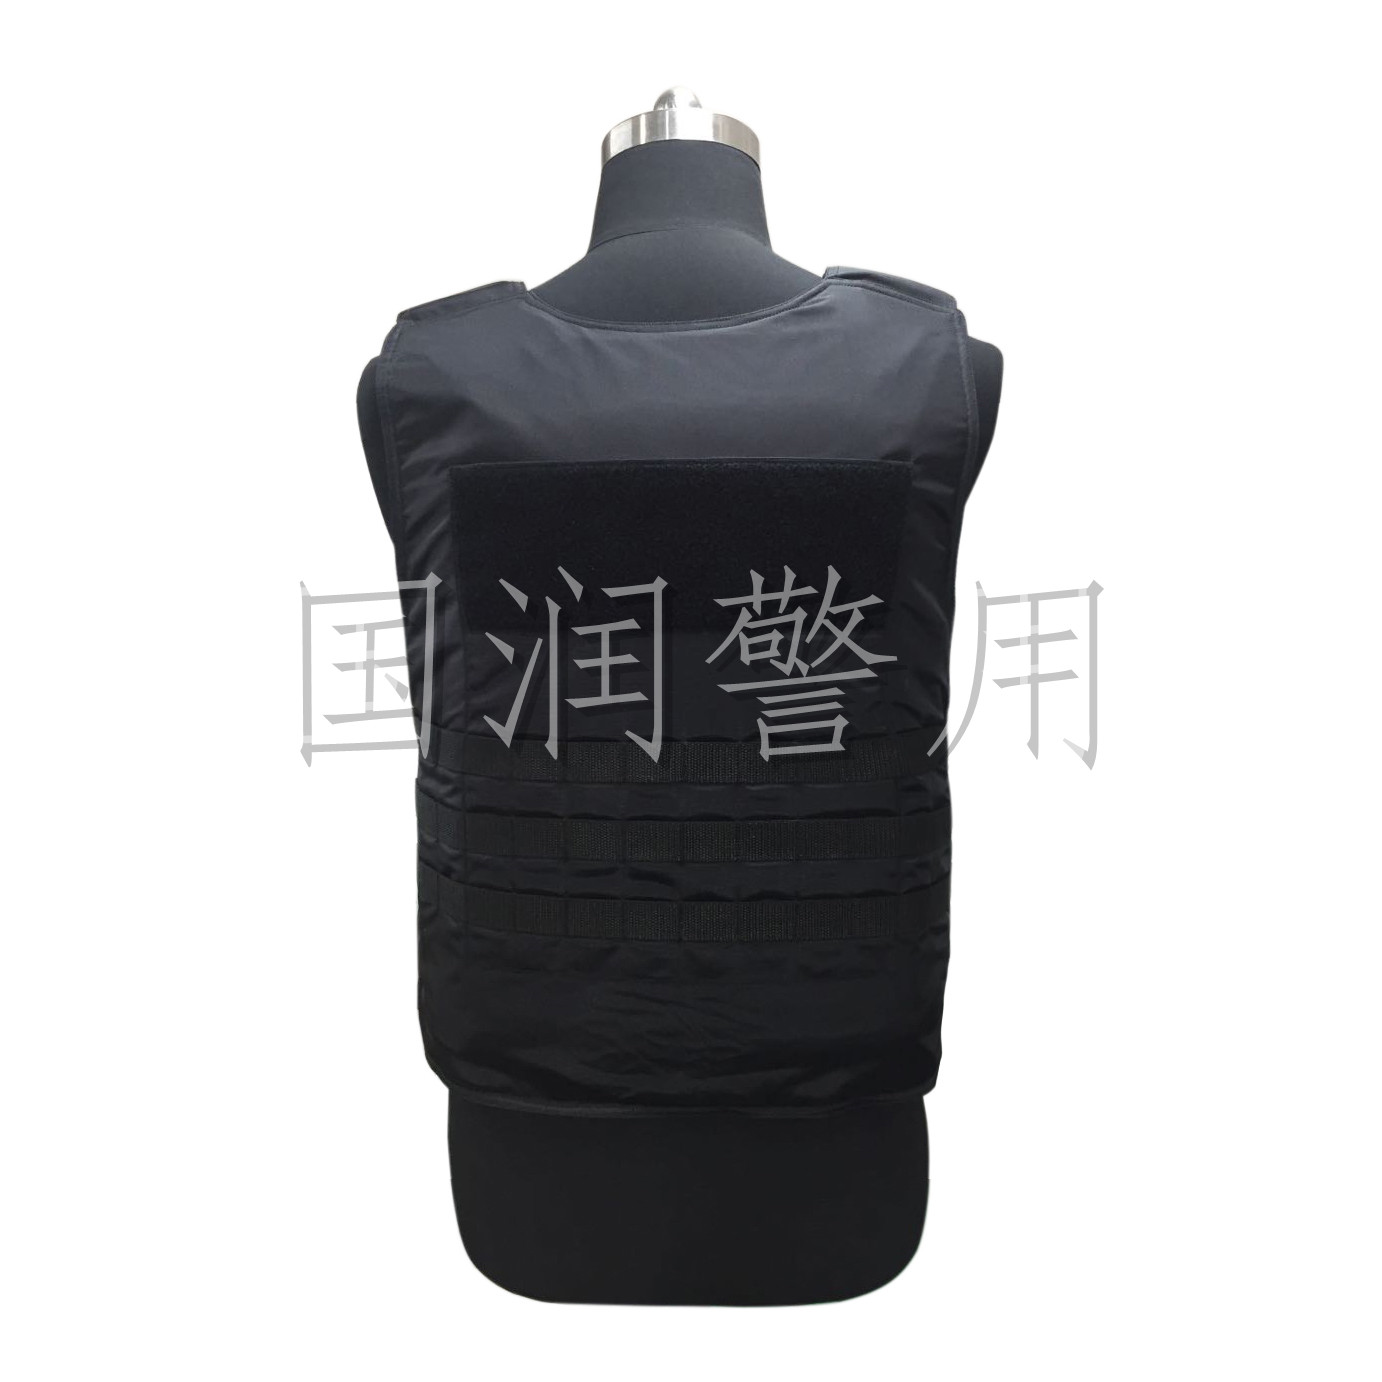 防弹衣(3级pe )("警盾"比测第一名) - 靖江市国润警用器材制造有限